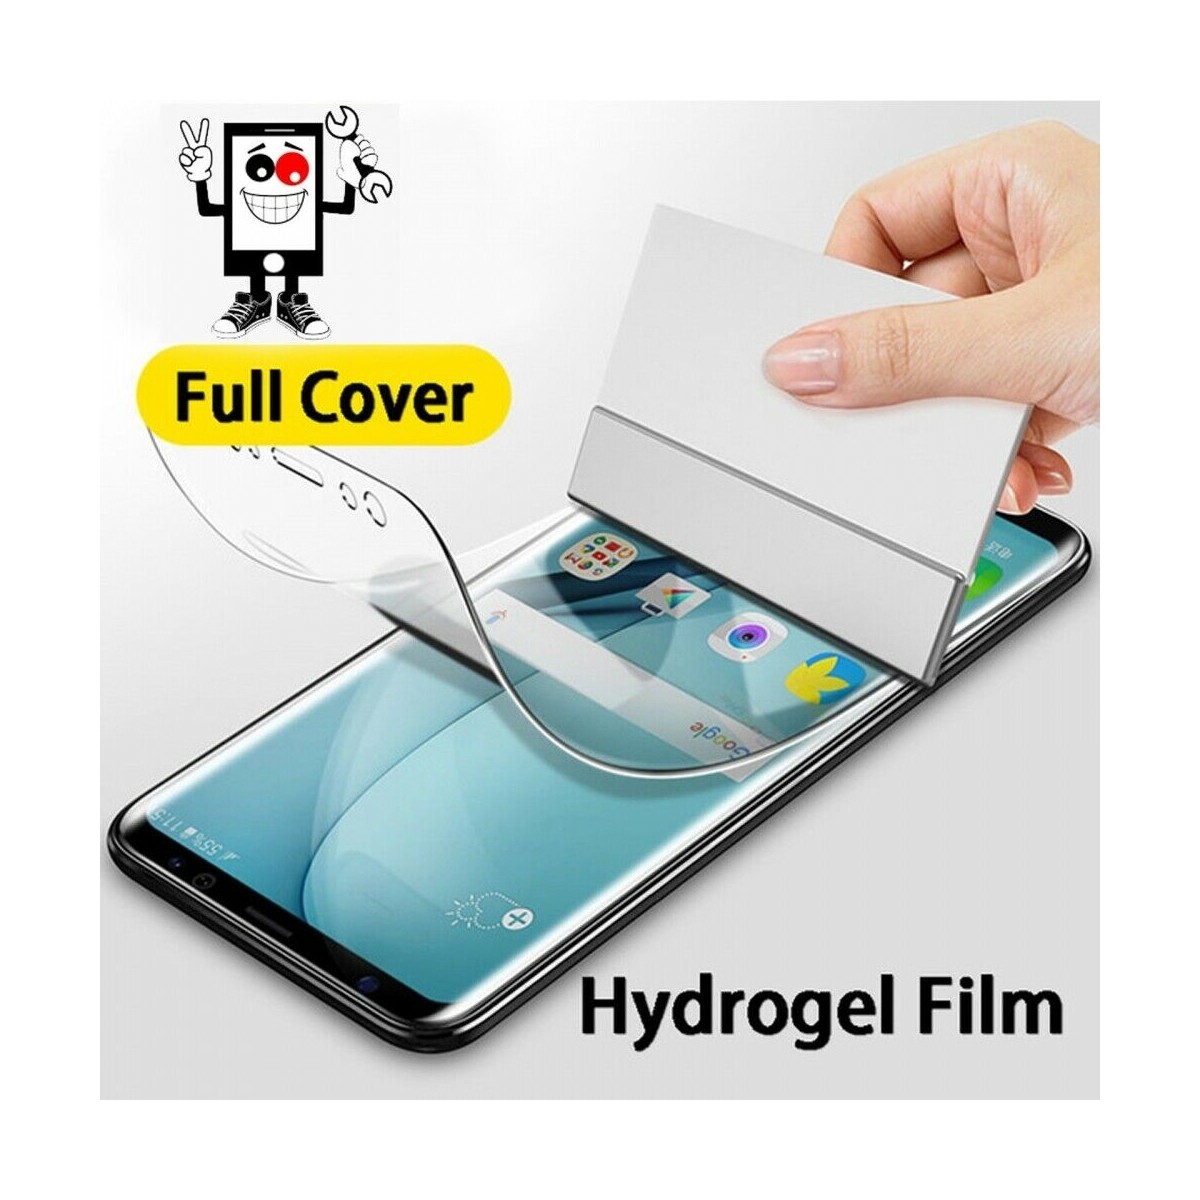 Protector Trasero Autorreparable de Hidrogel para Apple iPhone 5S